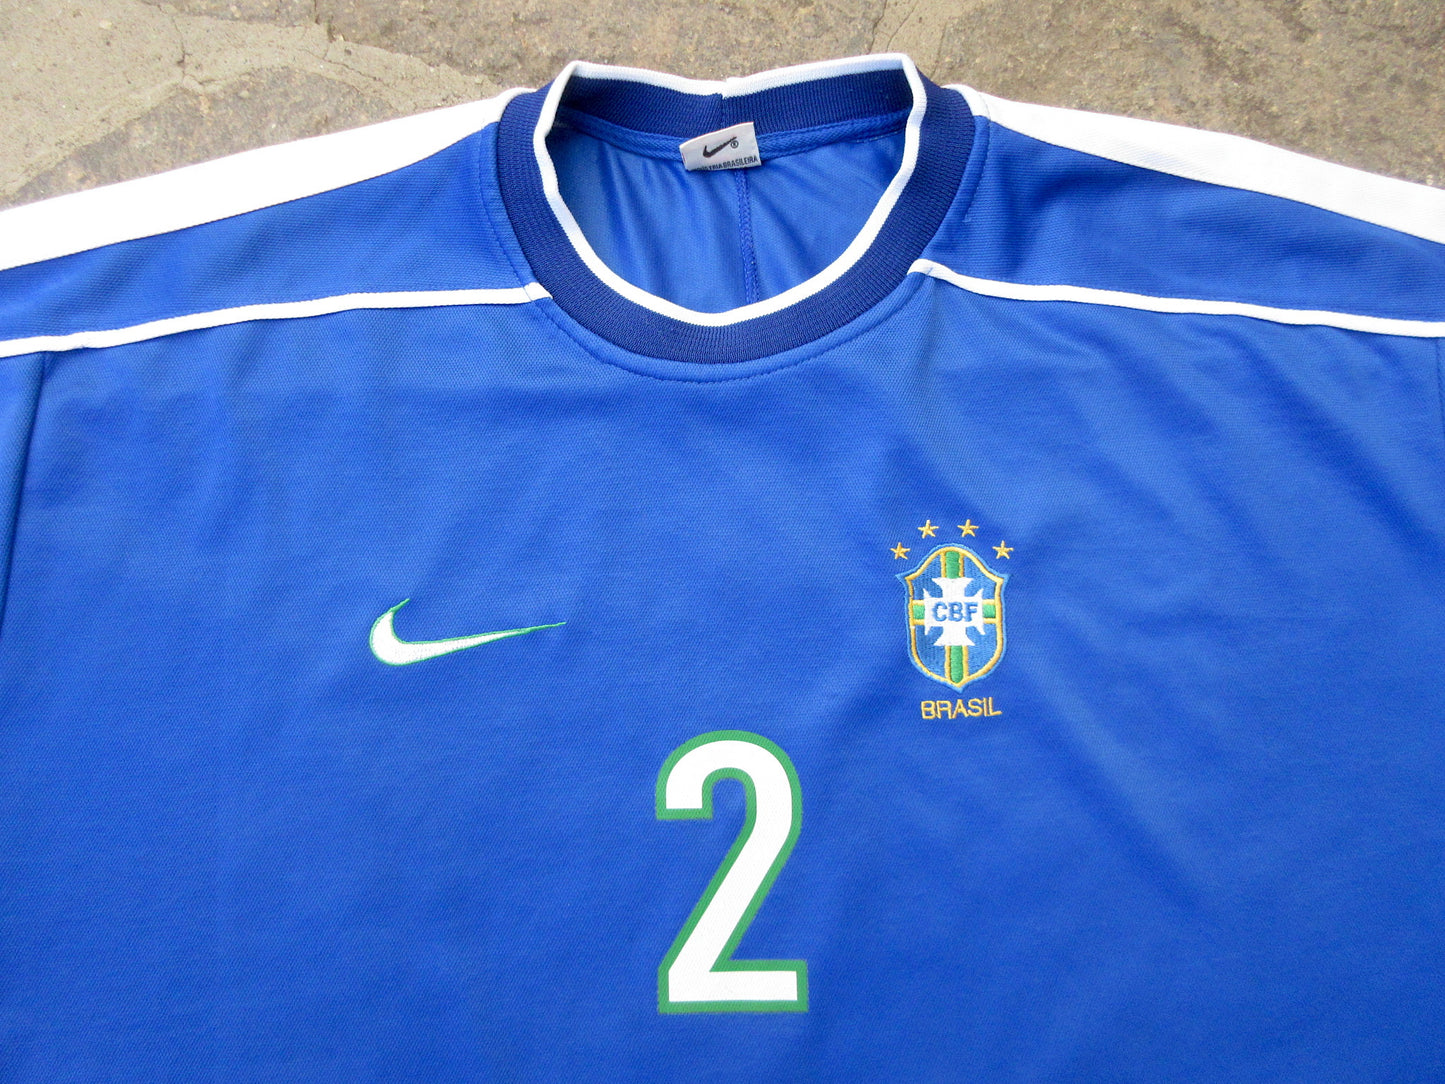 BRAZIL, football shirt.